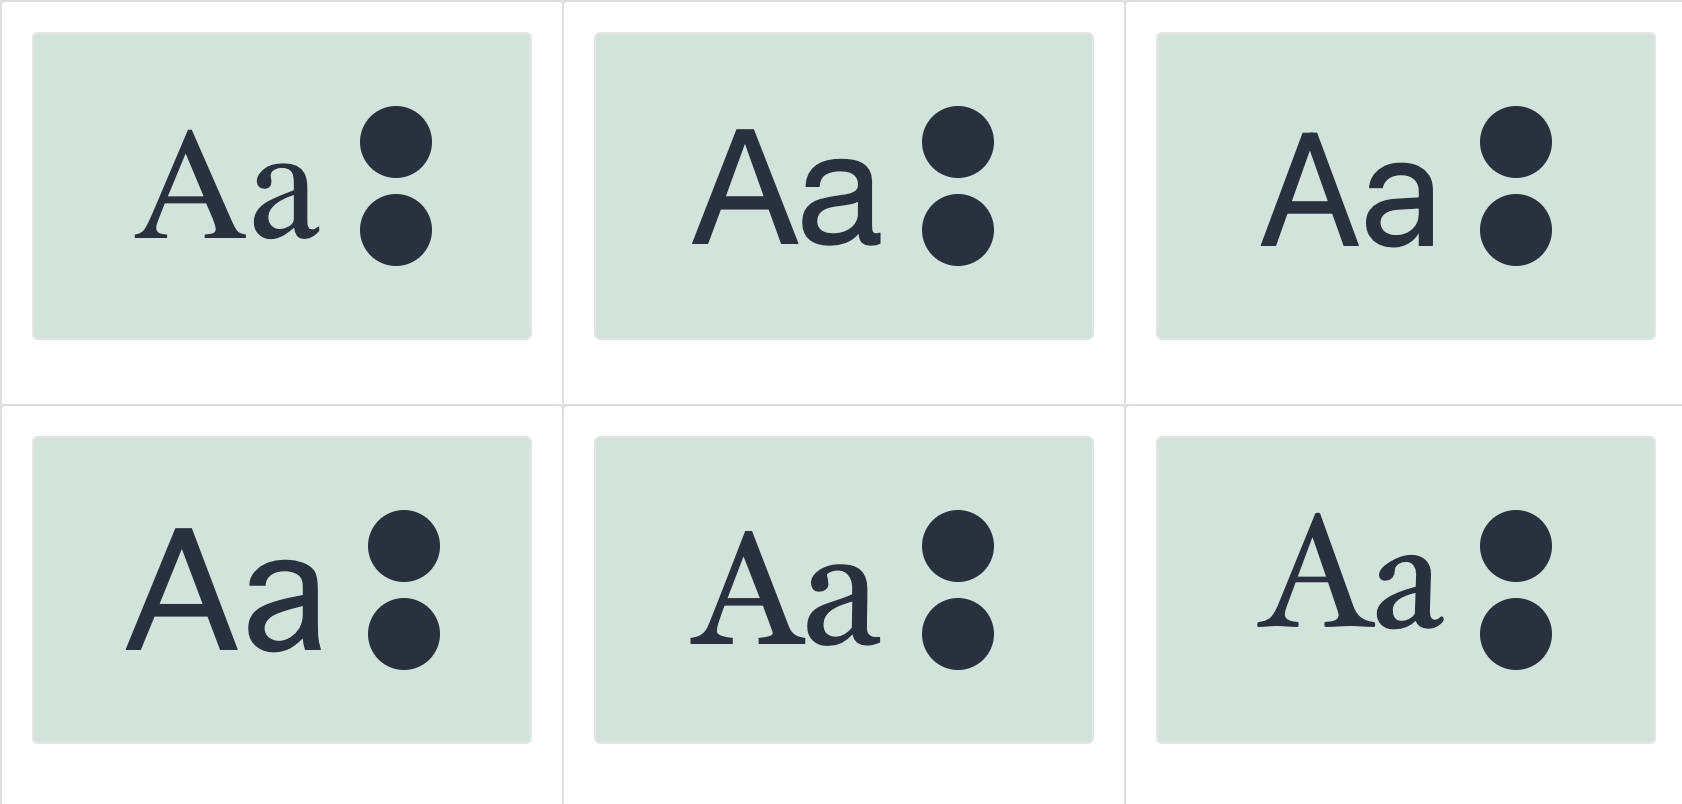 Sechs verschiedene Voransichten desselben Textes ("Aa") mit verschiedenen Schriftfamilien.